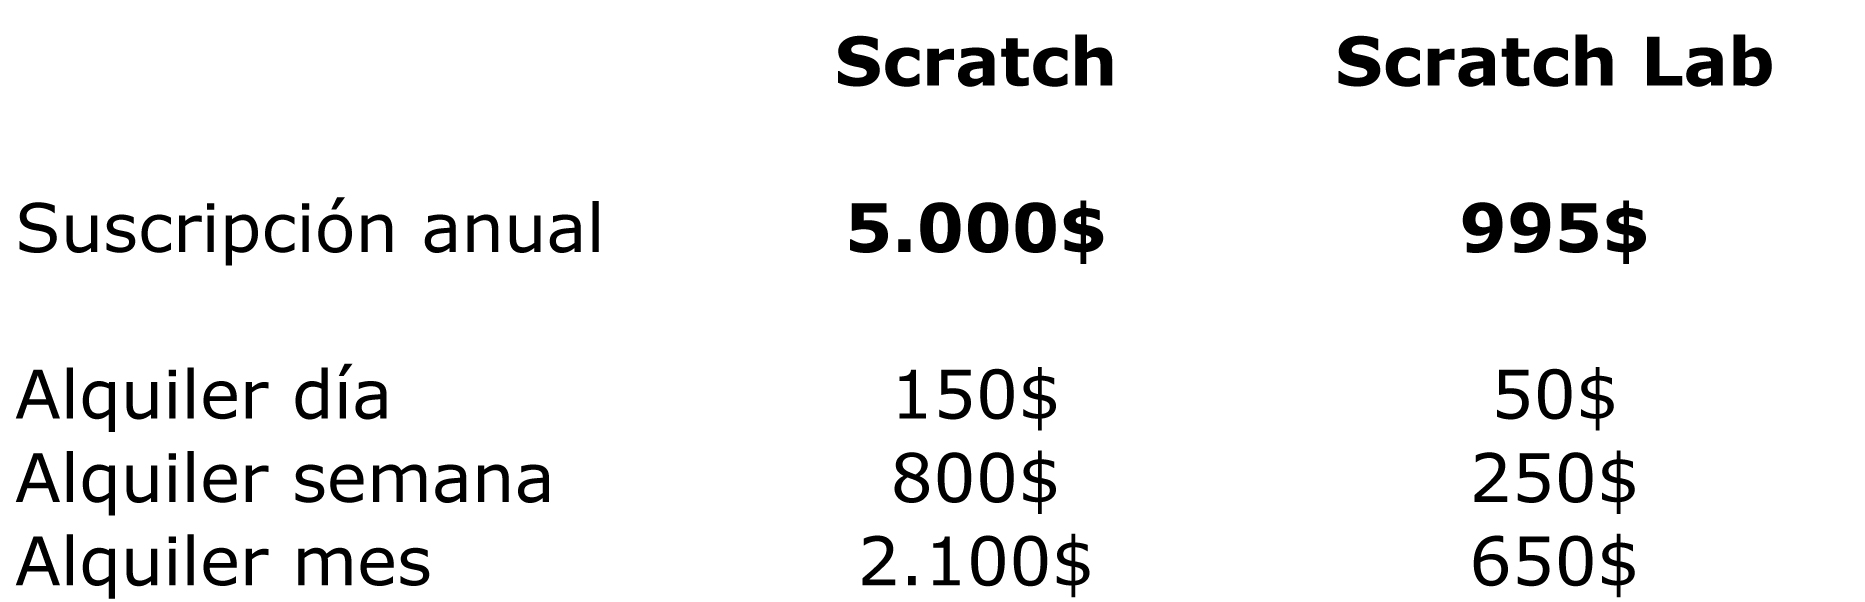 Scratch precios